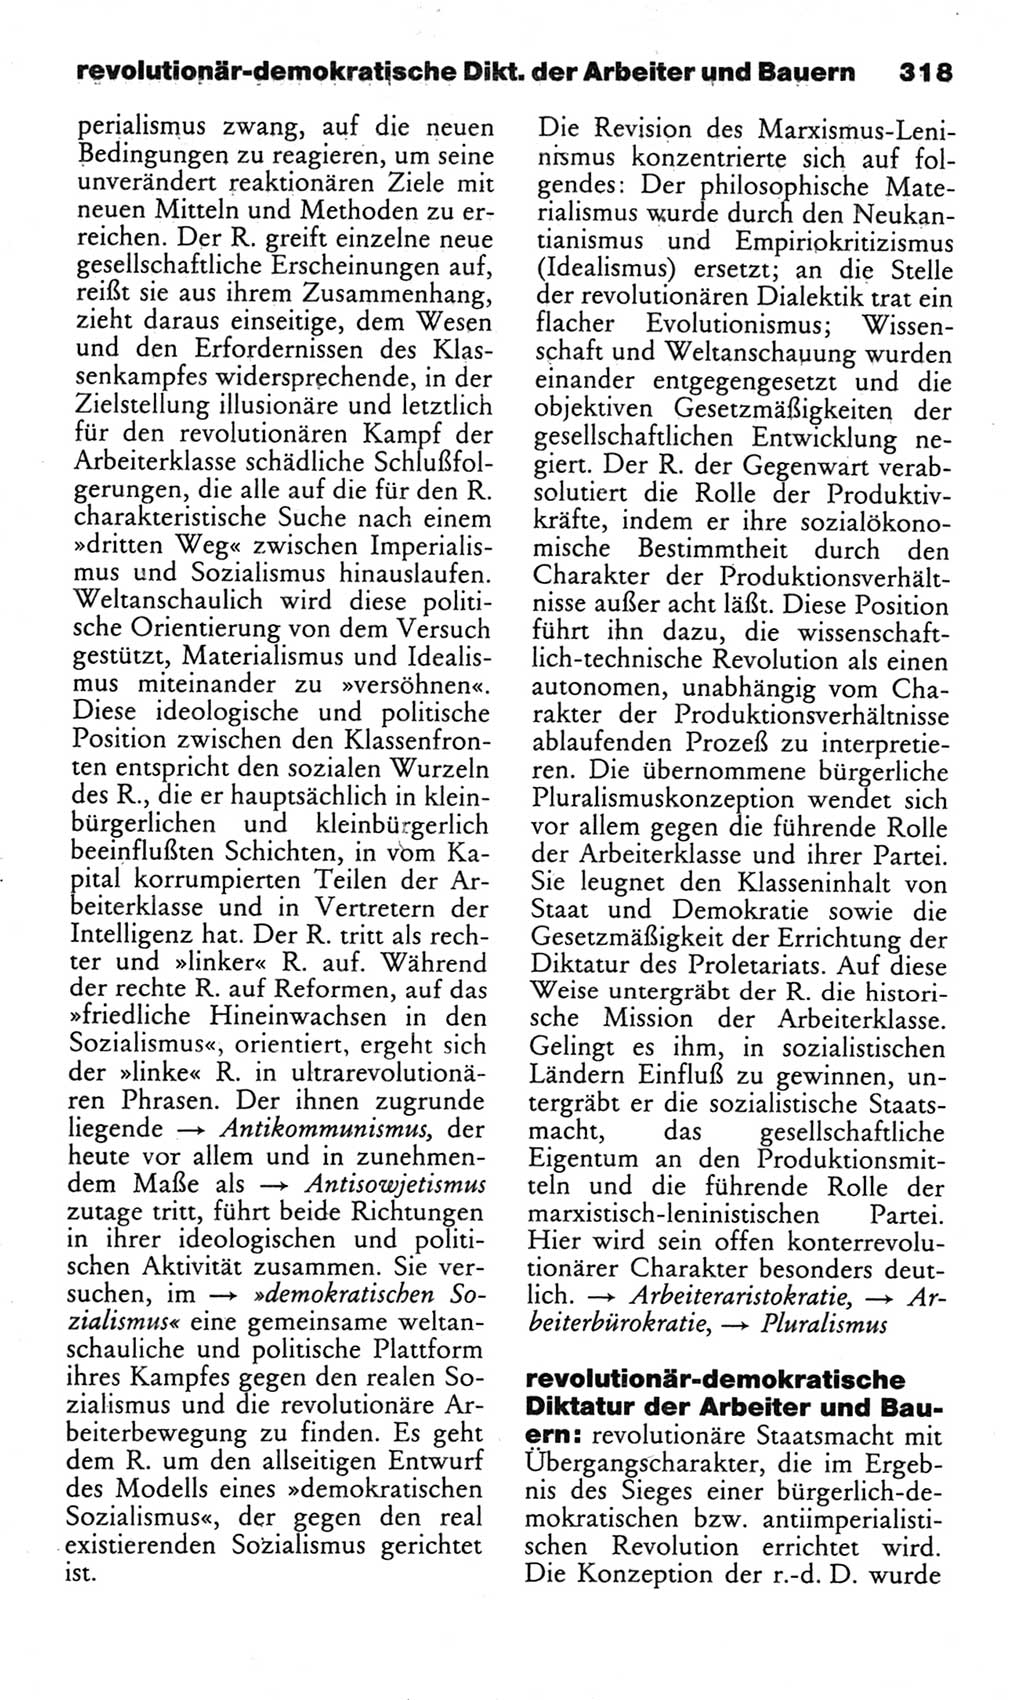 Wörterbuch des wissenschaftlichen Kommunismus [Deutsche Demokratische Republik (DDR)] 1982, Seite 318 (Wb. wiss. Komm. DDR 1982, S. 318)